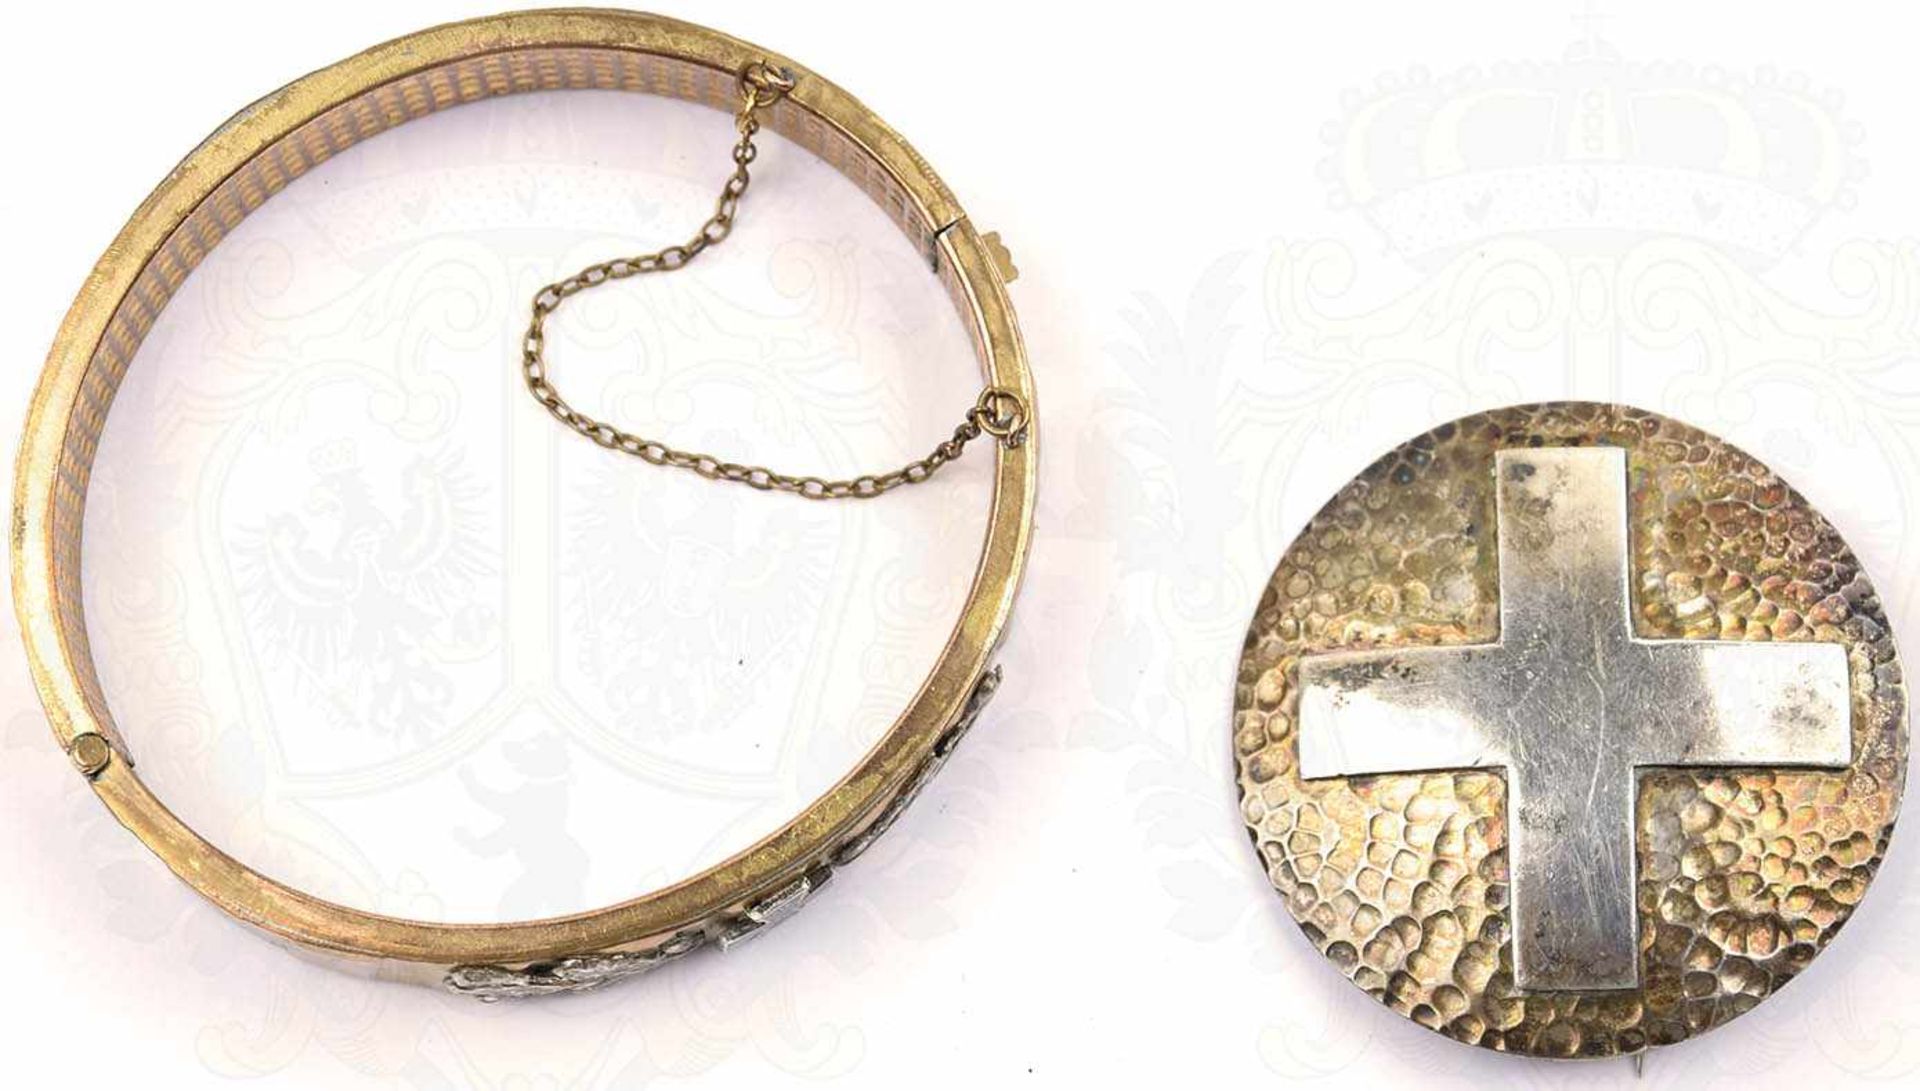 PATRIOTISCHER ARMREIF, in Form eines Granaten-Führungsring gefertigt, Leichtmetall/vergoldet, mit